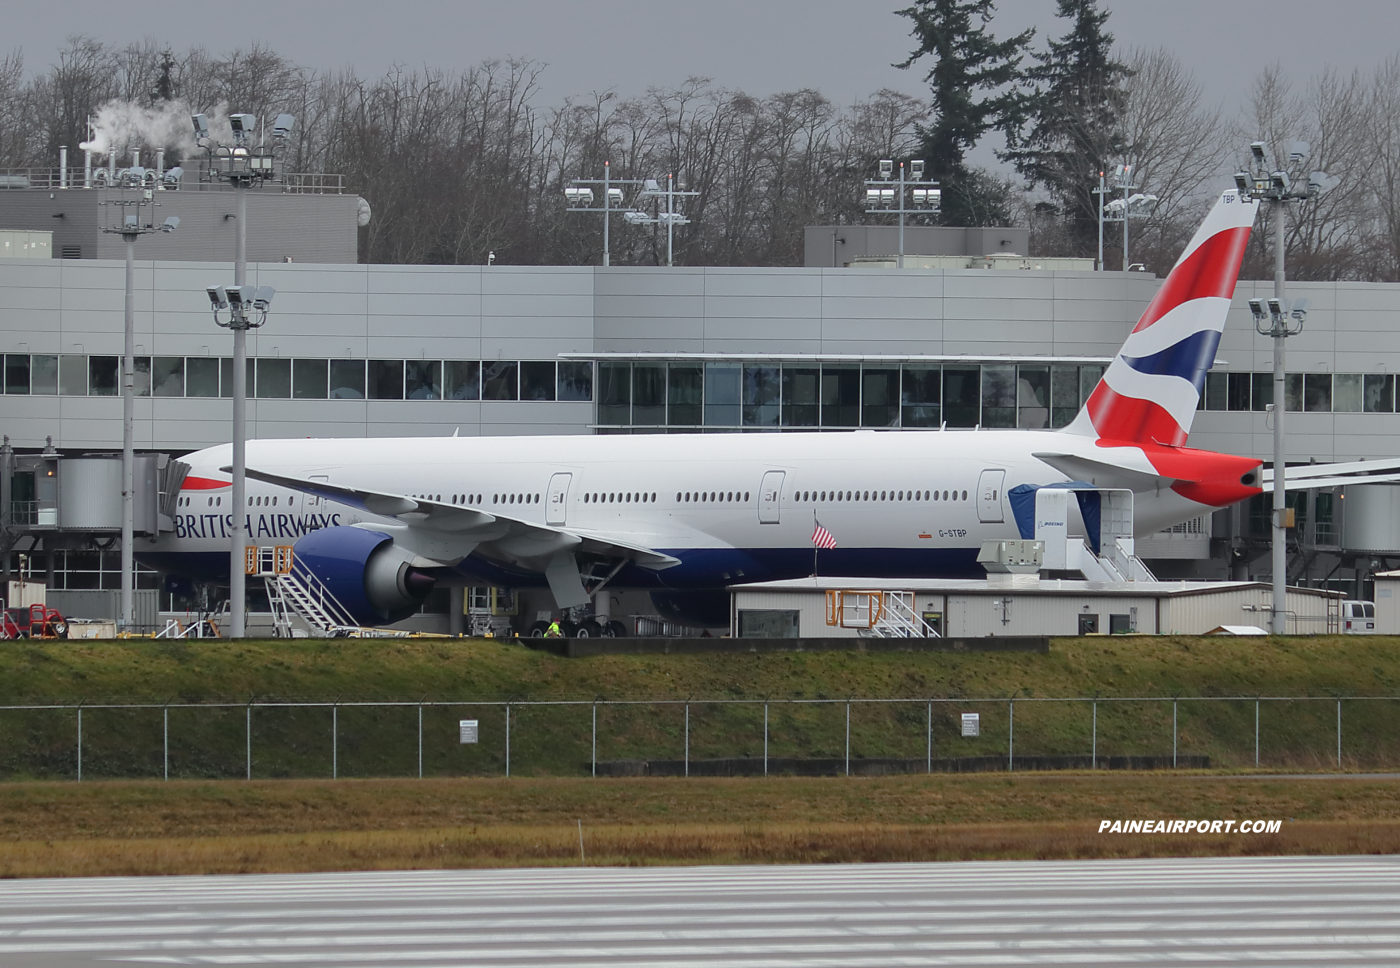 British Airways 777 G-STBP at KPAE Paine Field